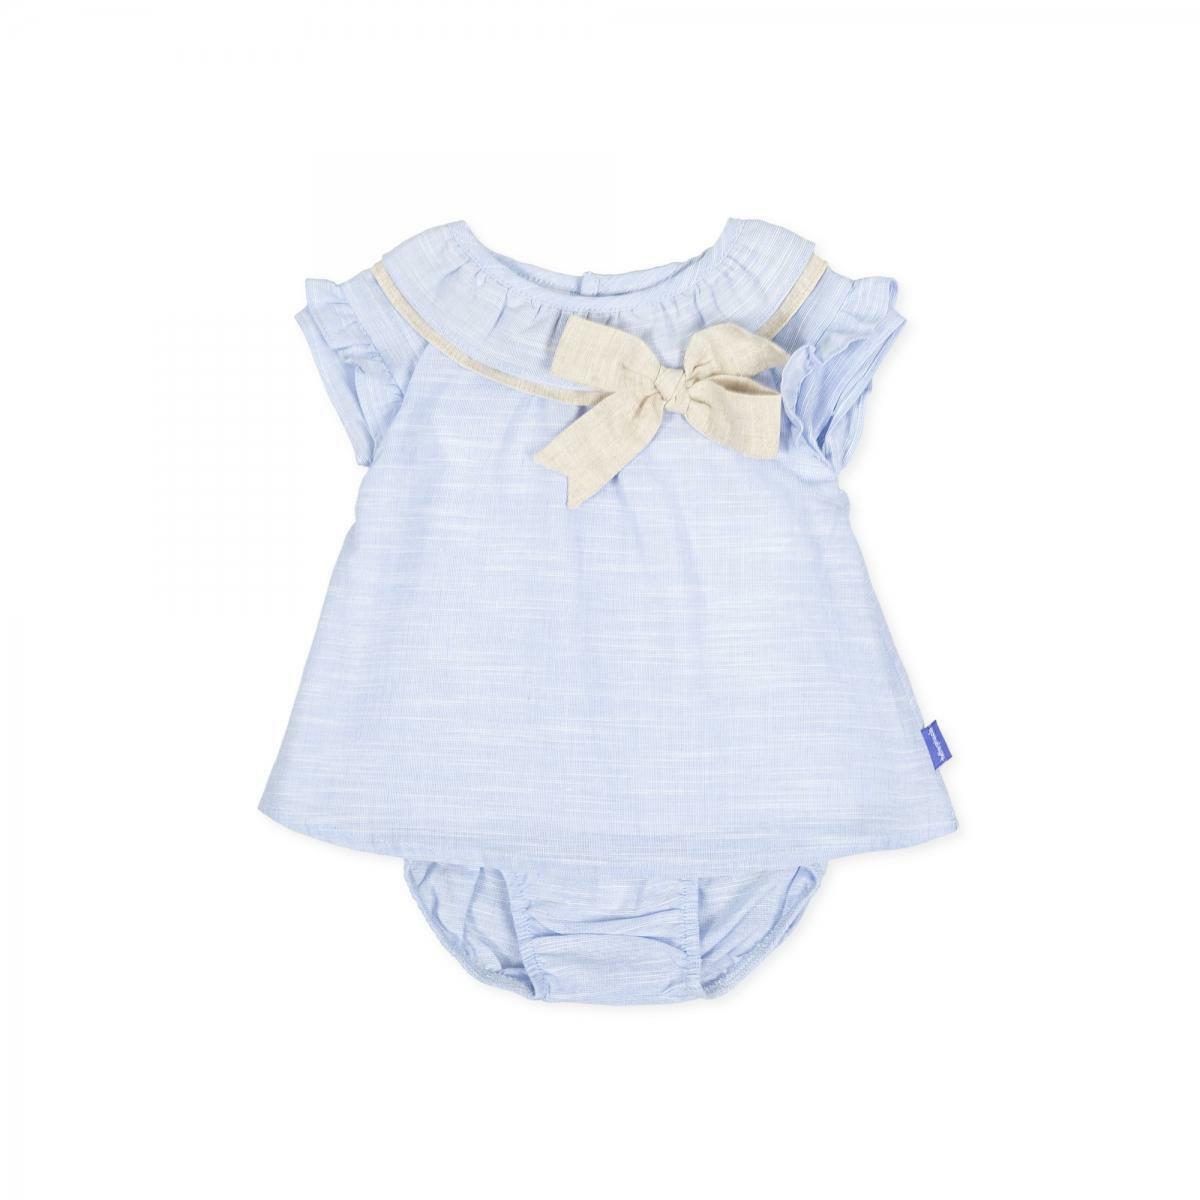 tutto piccolo tutto piccolo vestitino neonata azzurro 8210s20